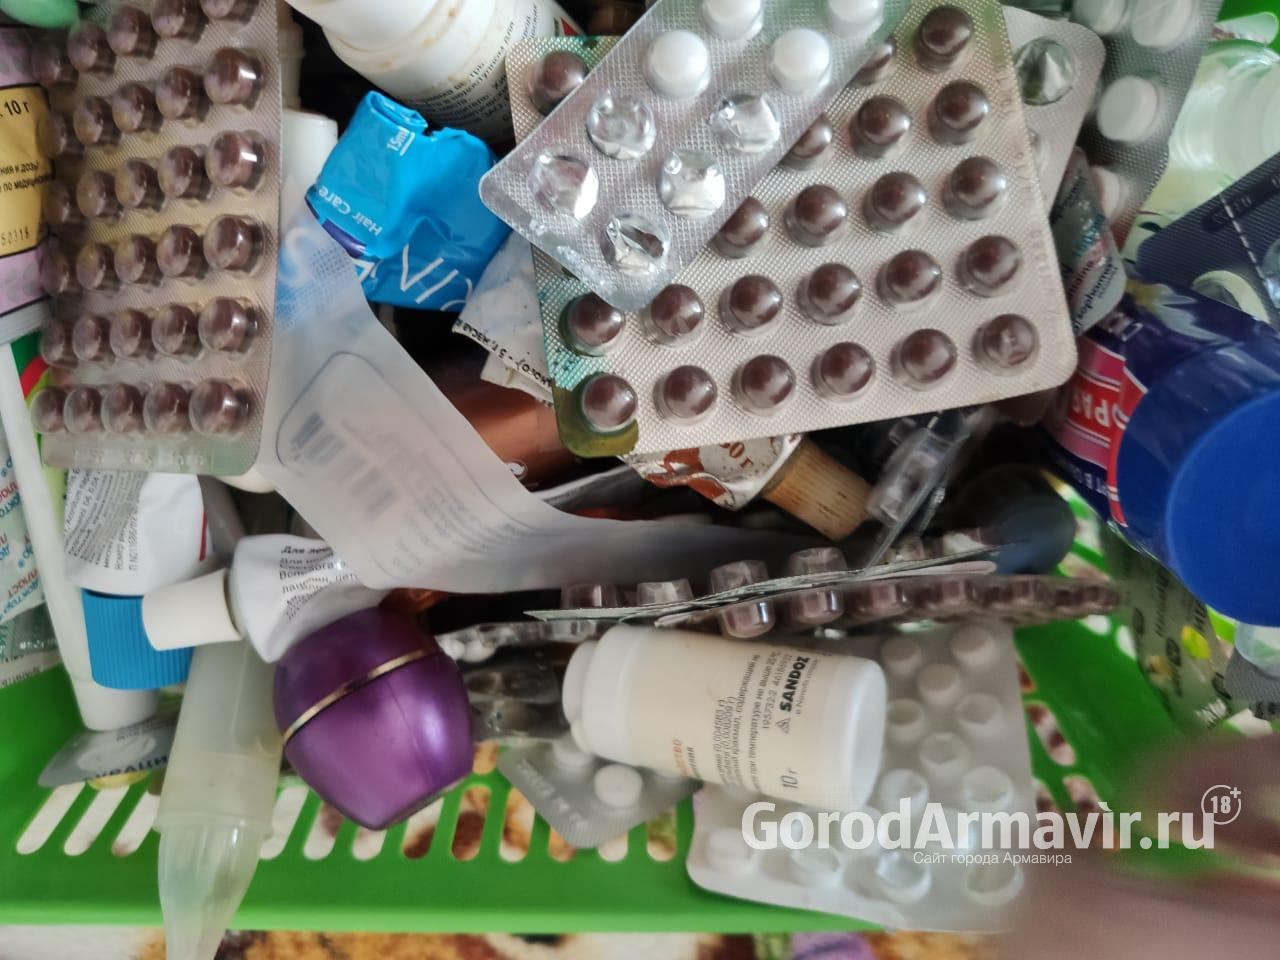 Врачи прогнозируют высокую активность 2 новых штаммов гриппа в Армавире и на Кубани 